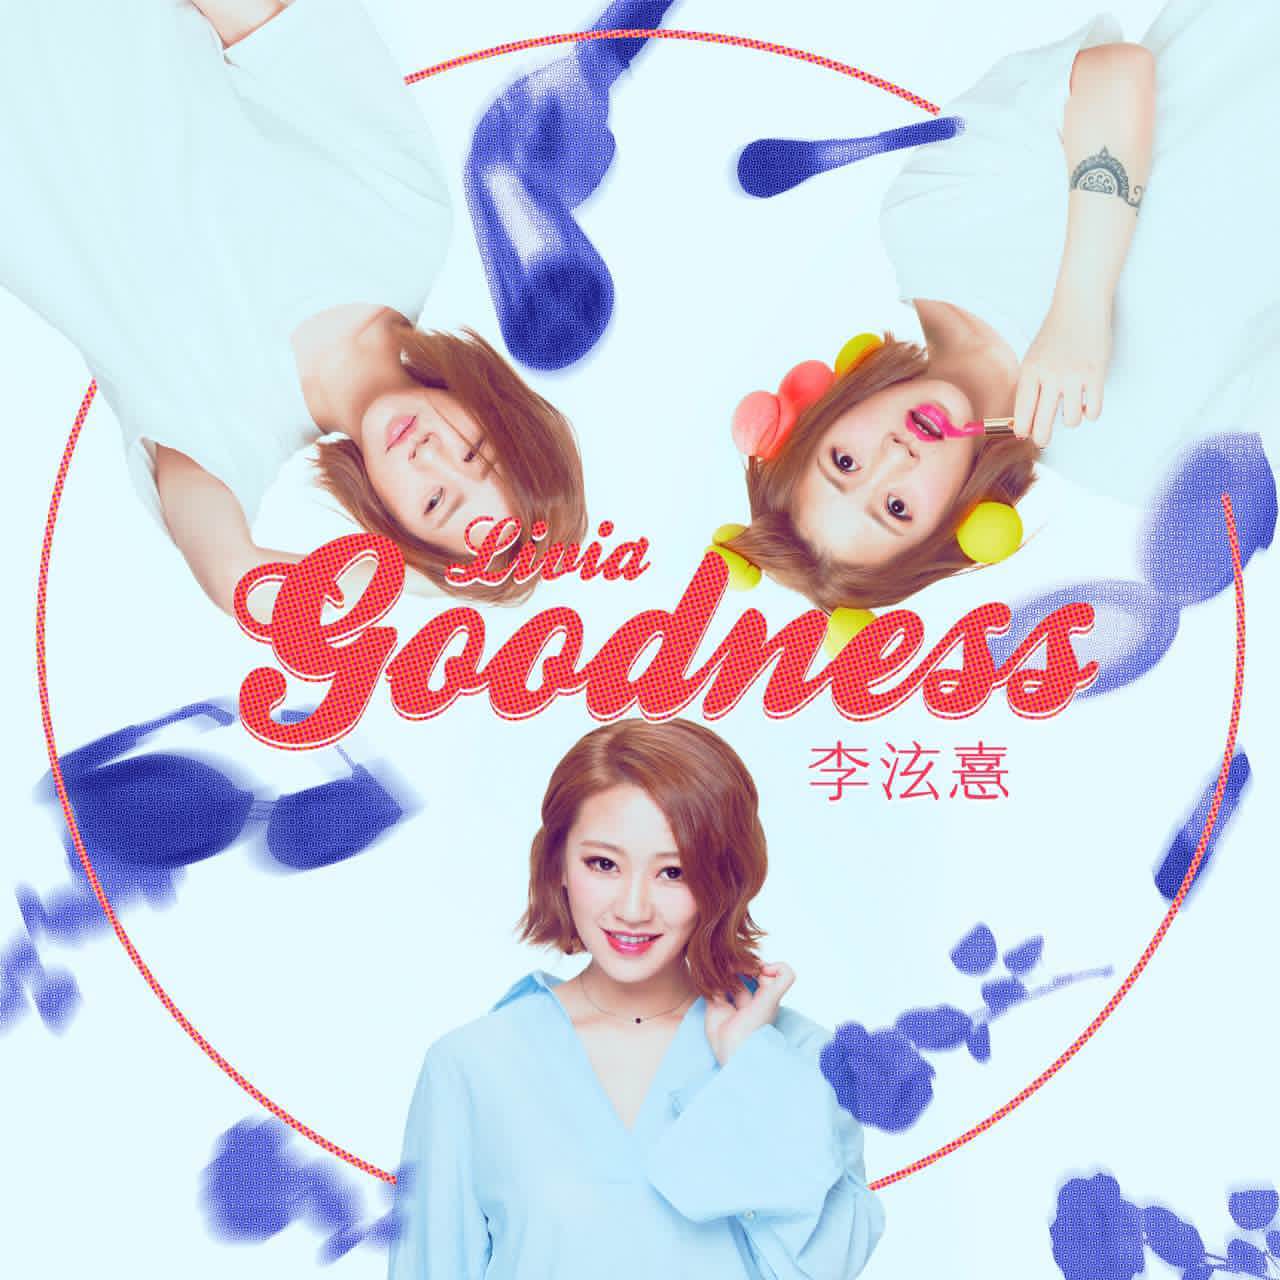 goodness(李泫憙演唱歌曲)